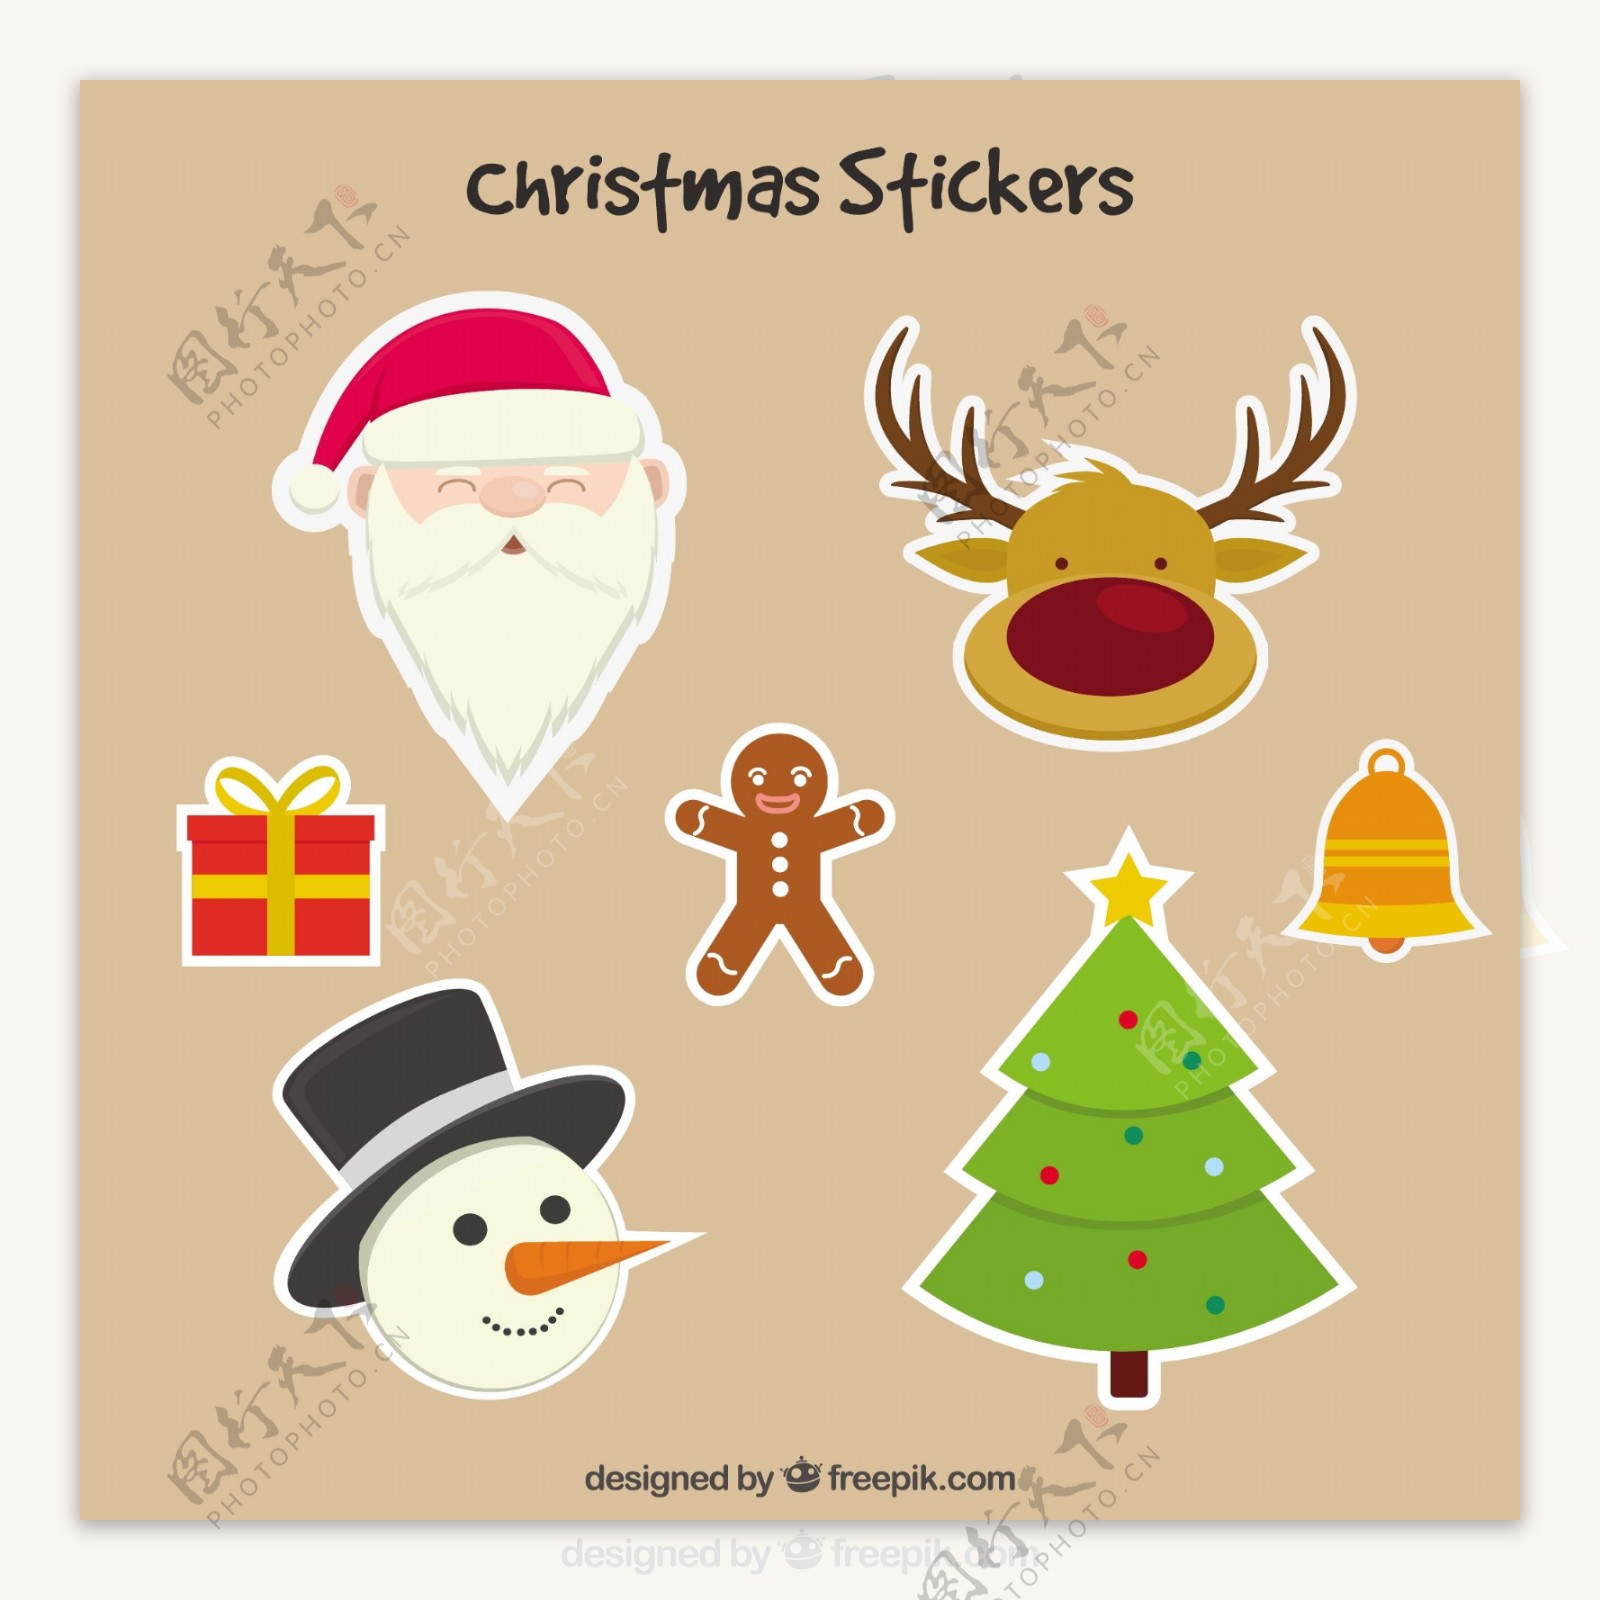 可爱的圣诞人物stikers